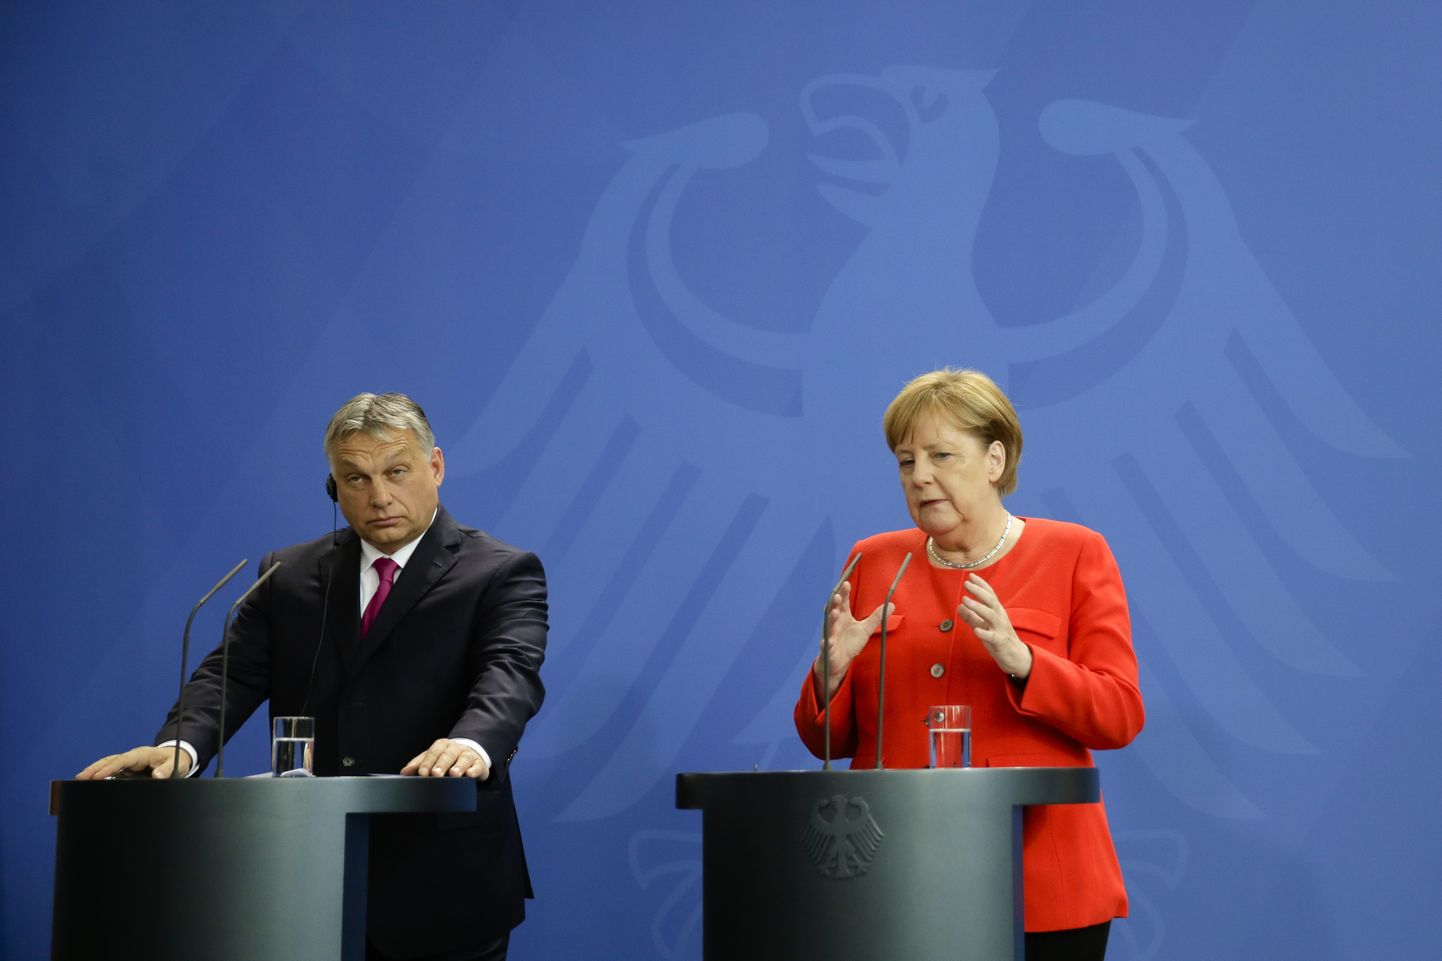 Ungari peaminister Viktor Orbán ja Saksa kantsler Angela Merkel täna Berliinis kohtudes üksmeelt ei leidnud.